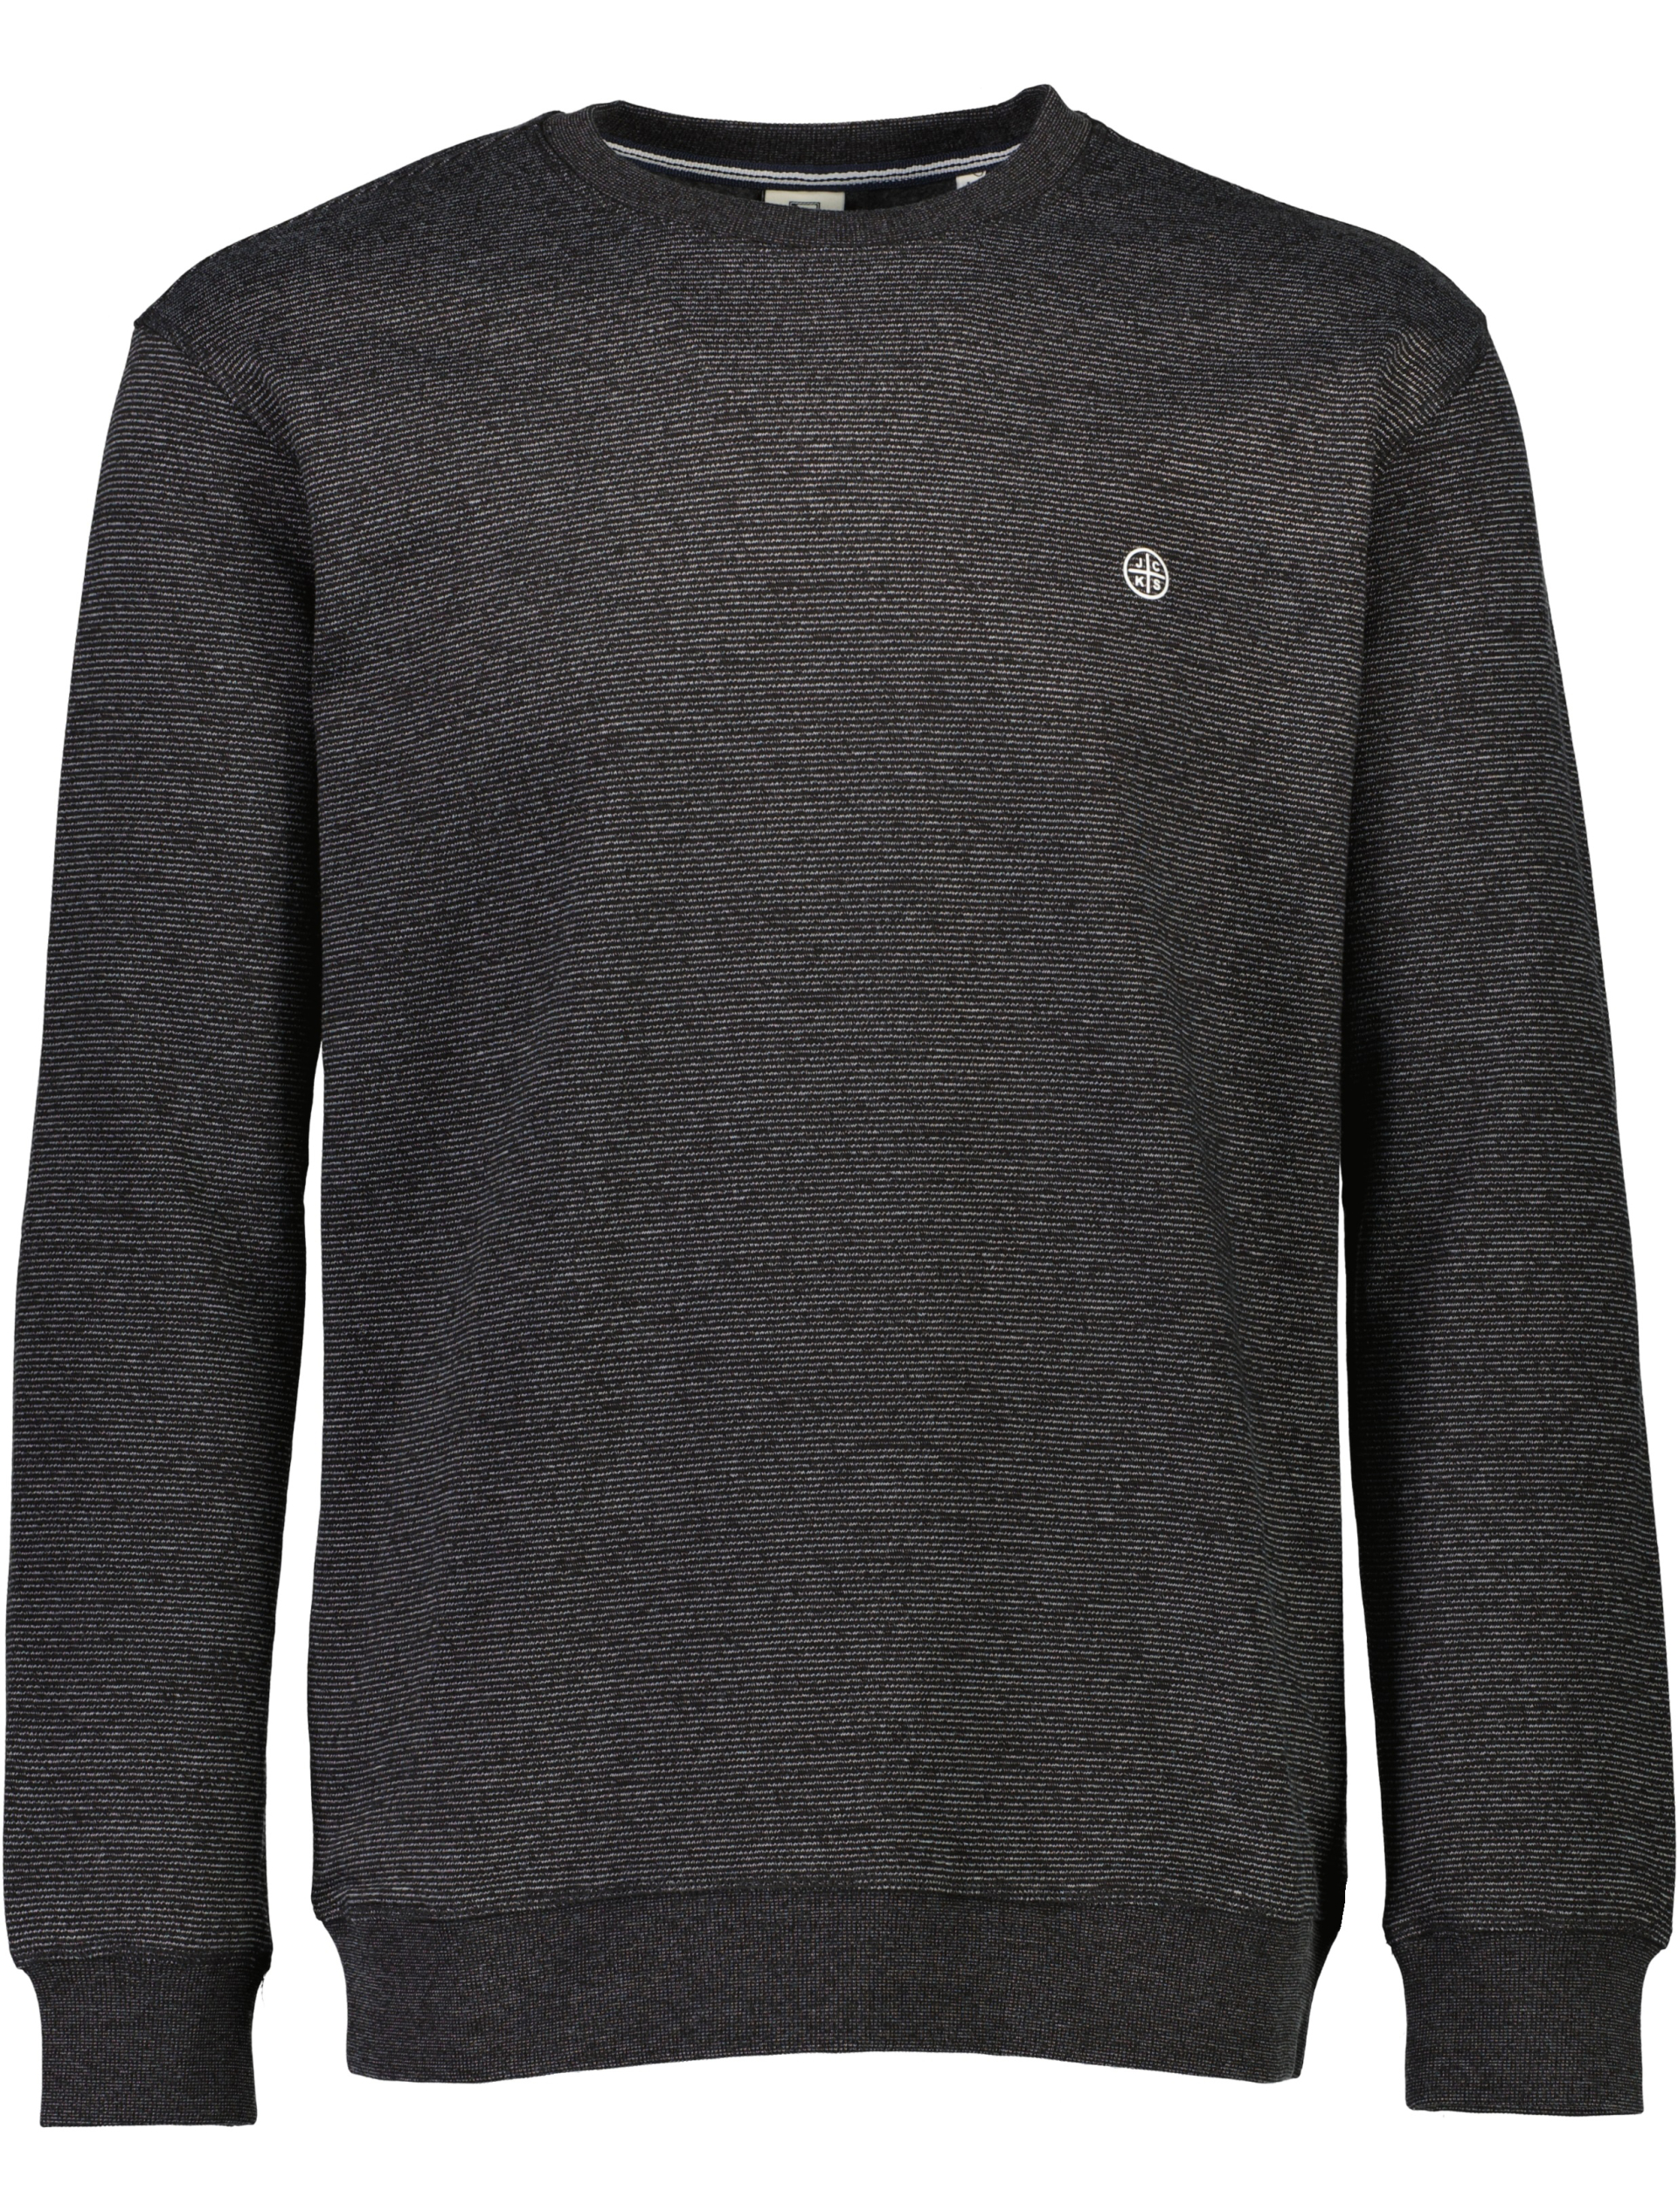 Jack's Sweatshirt sort / black